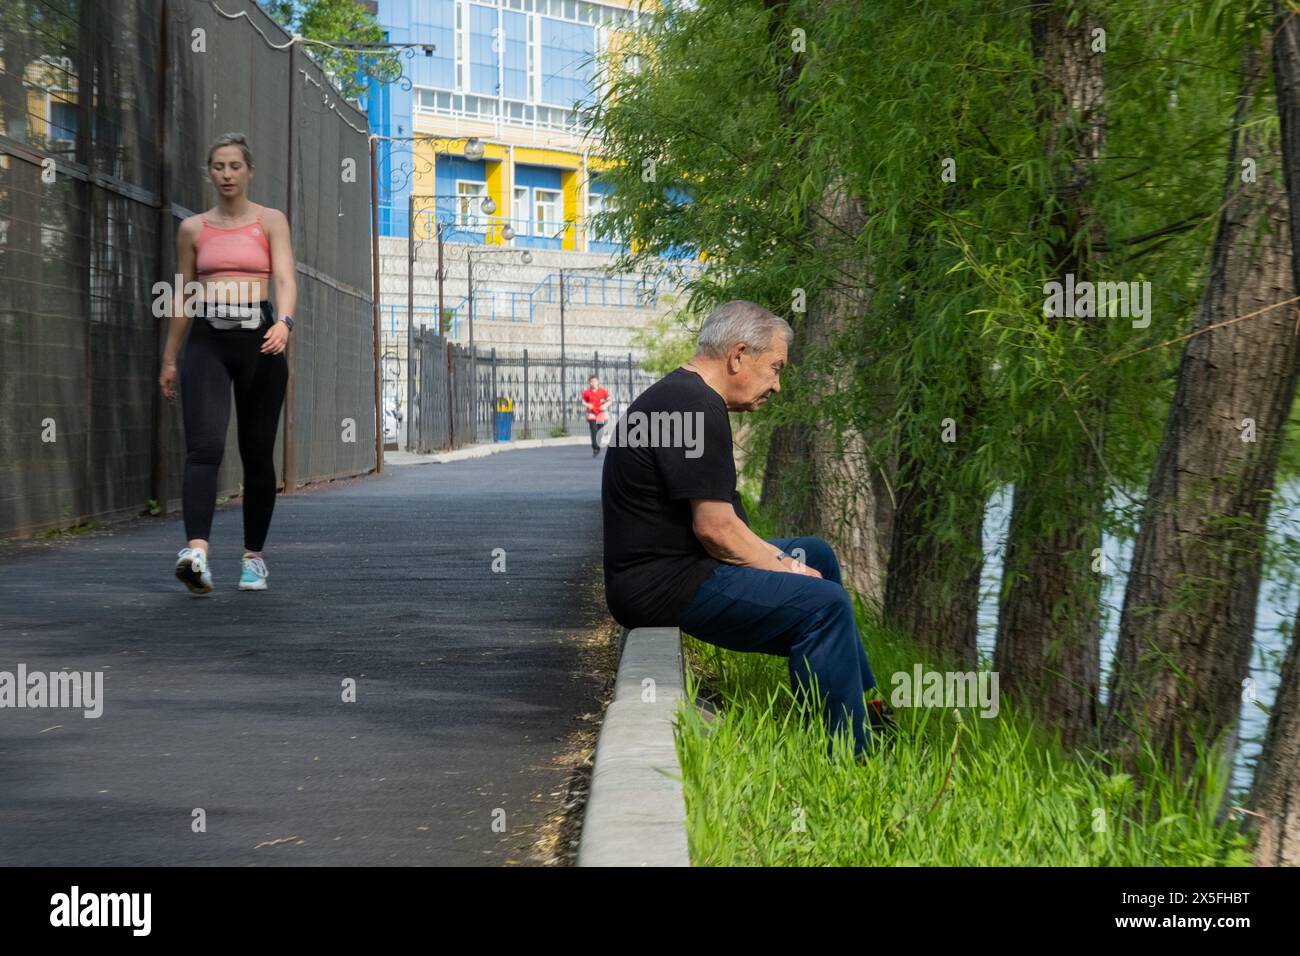 Un homme est assis sur un trottoir au bord de la rivière, une femme fait du jogging au bord de l'eau Banque D'Images